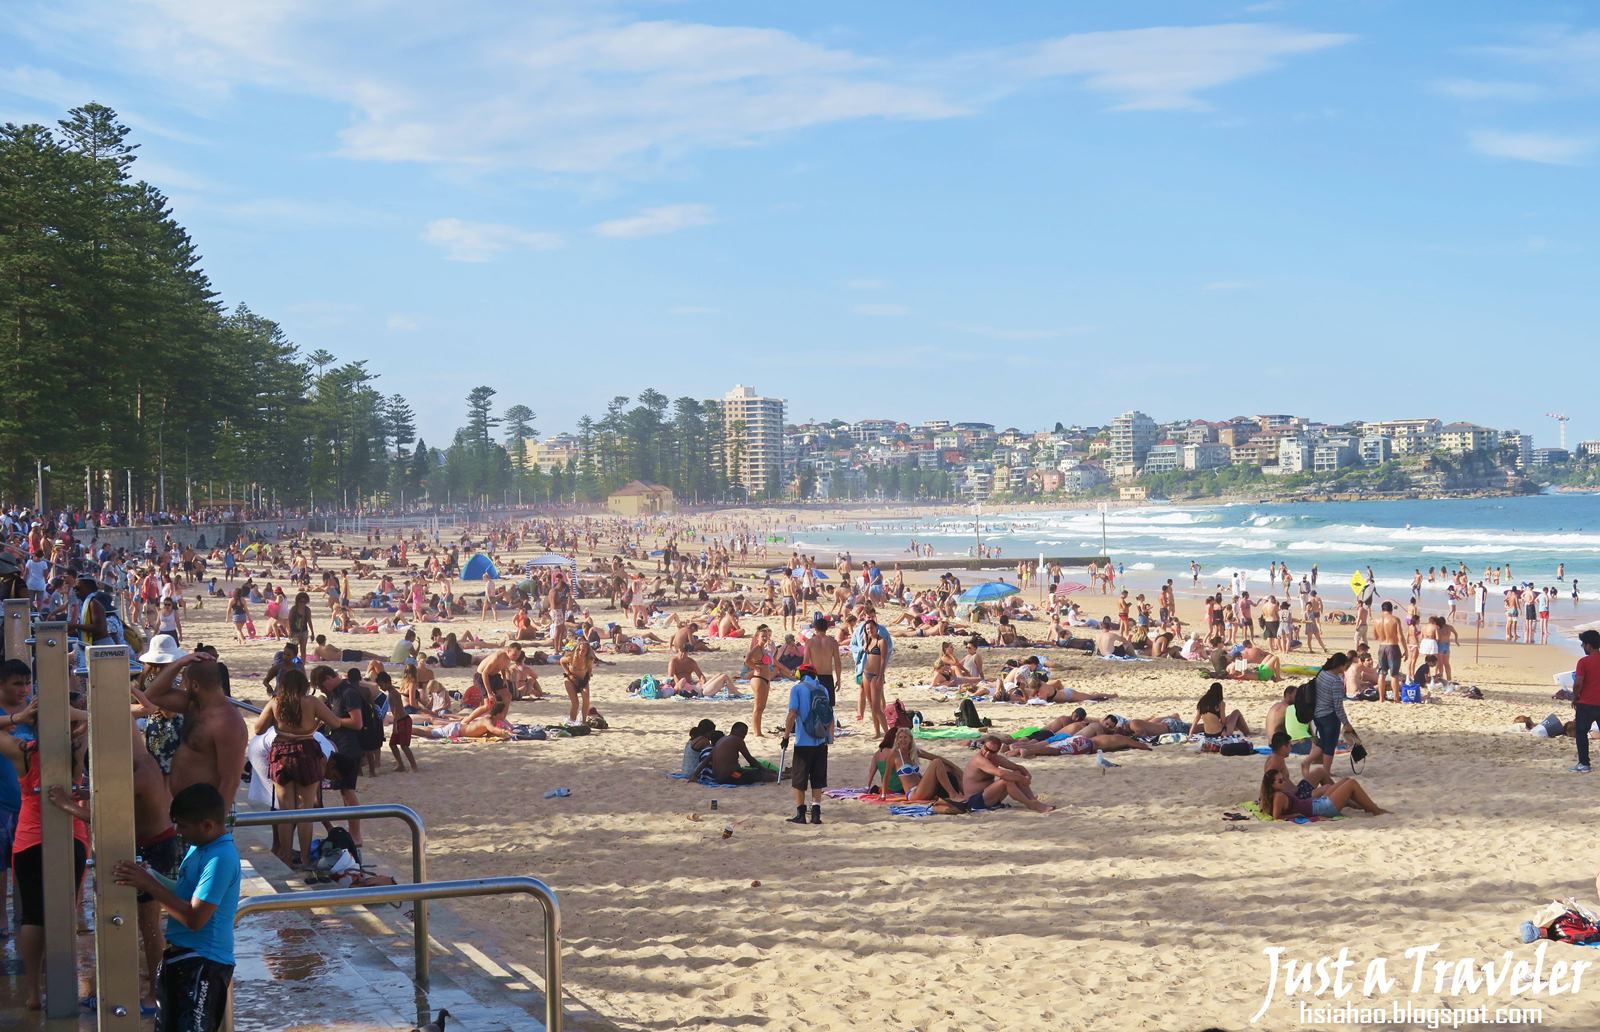 雪梨-悉尼-景點-推薦-曼利-海灘-交通-自由行-行程-旅遊-澳洲-Sydney-Manly-Beach-Tourist-Attraction-Travel-Australia